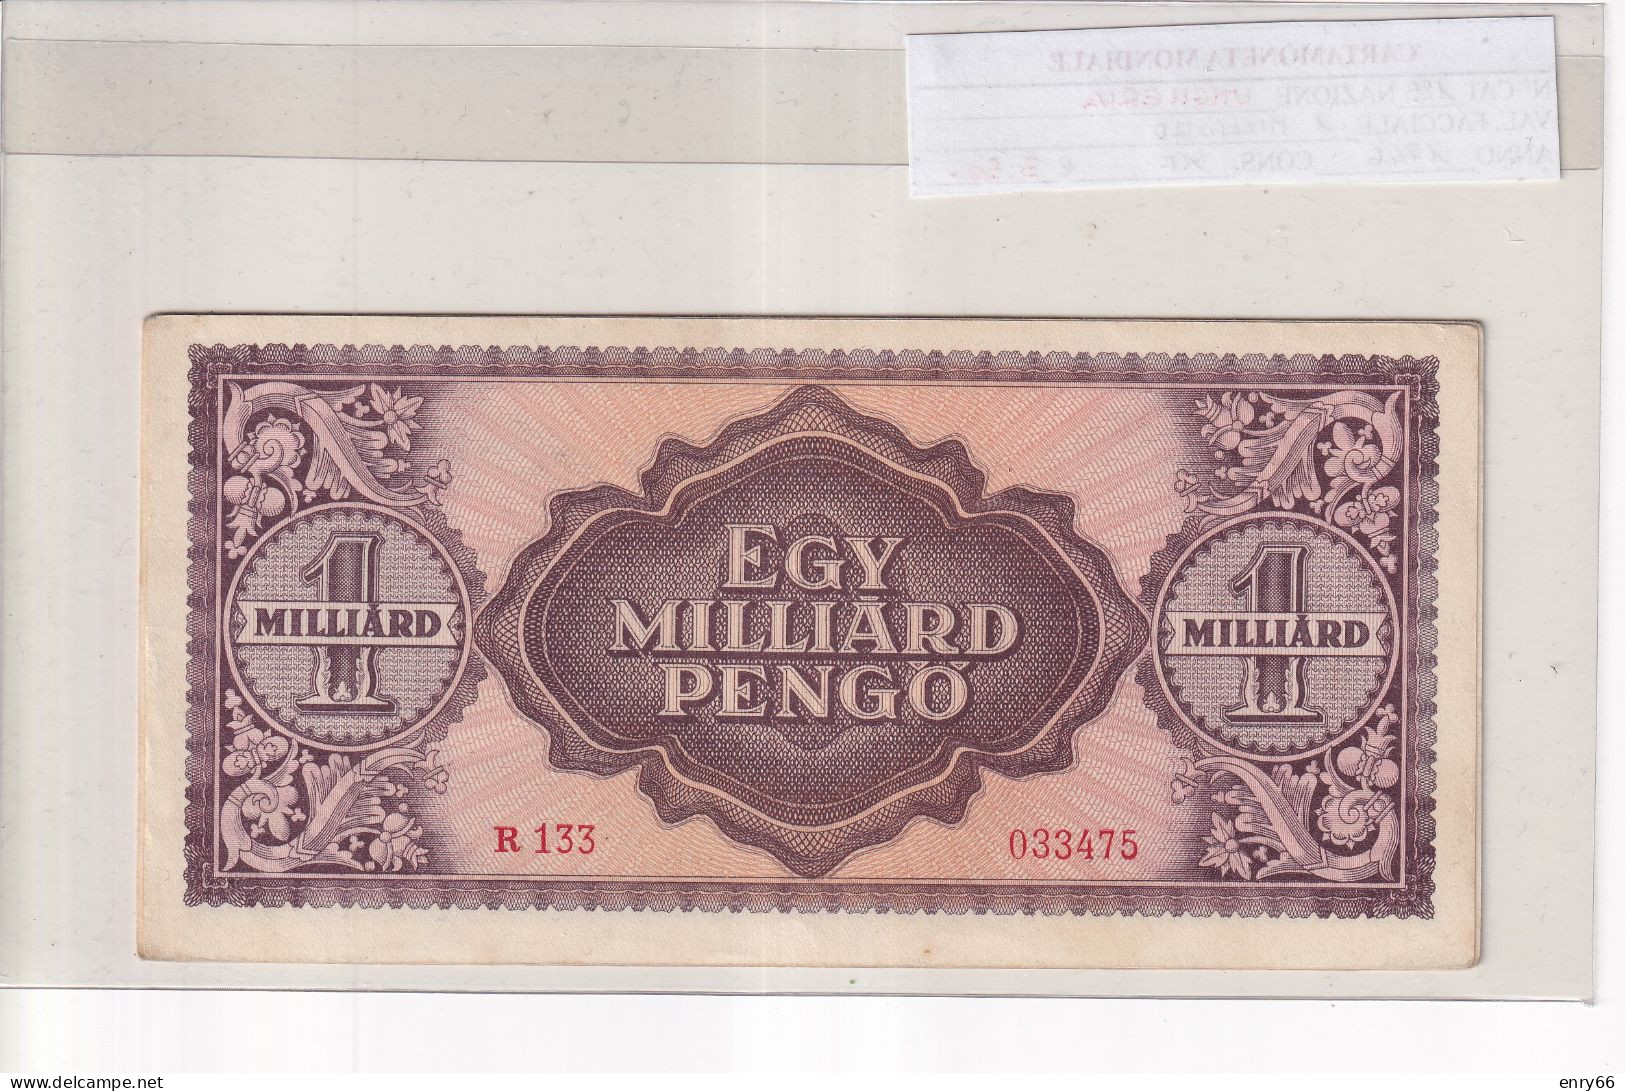 UNGHERIA  1 MILLIARD PENGO 1946  P. 125 - Hungría